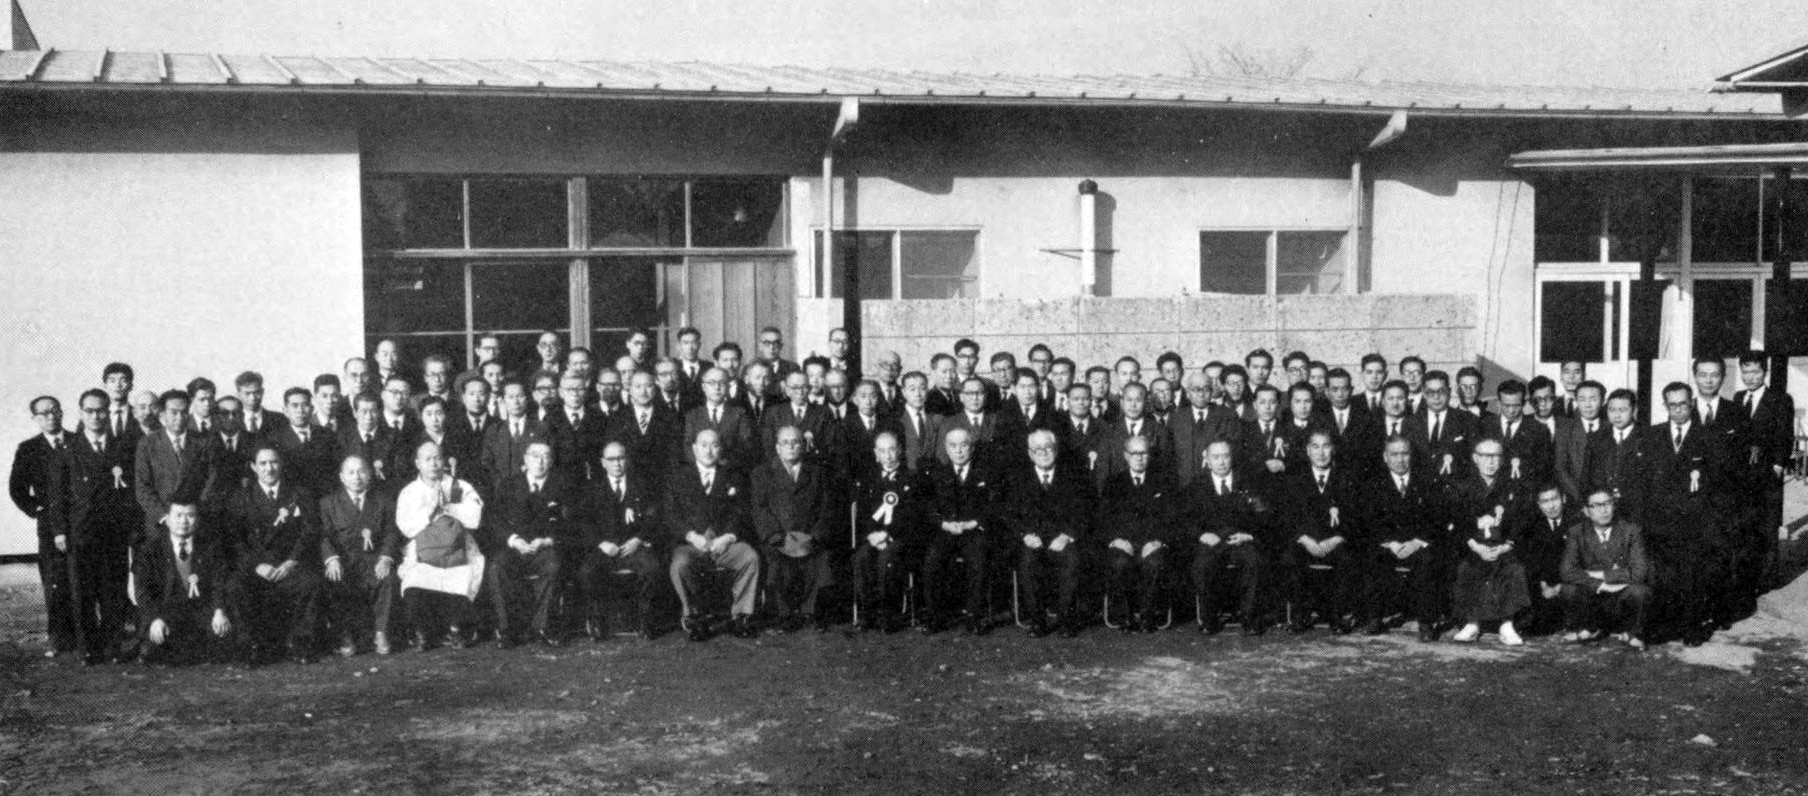 昭和33年2月15日に青山斎場で行われた大川周明葬儀告別式の葬儀委員を担当した人々